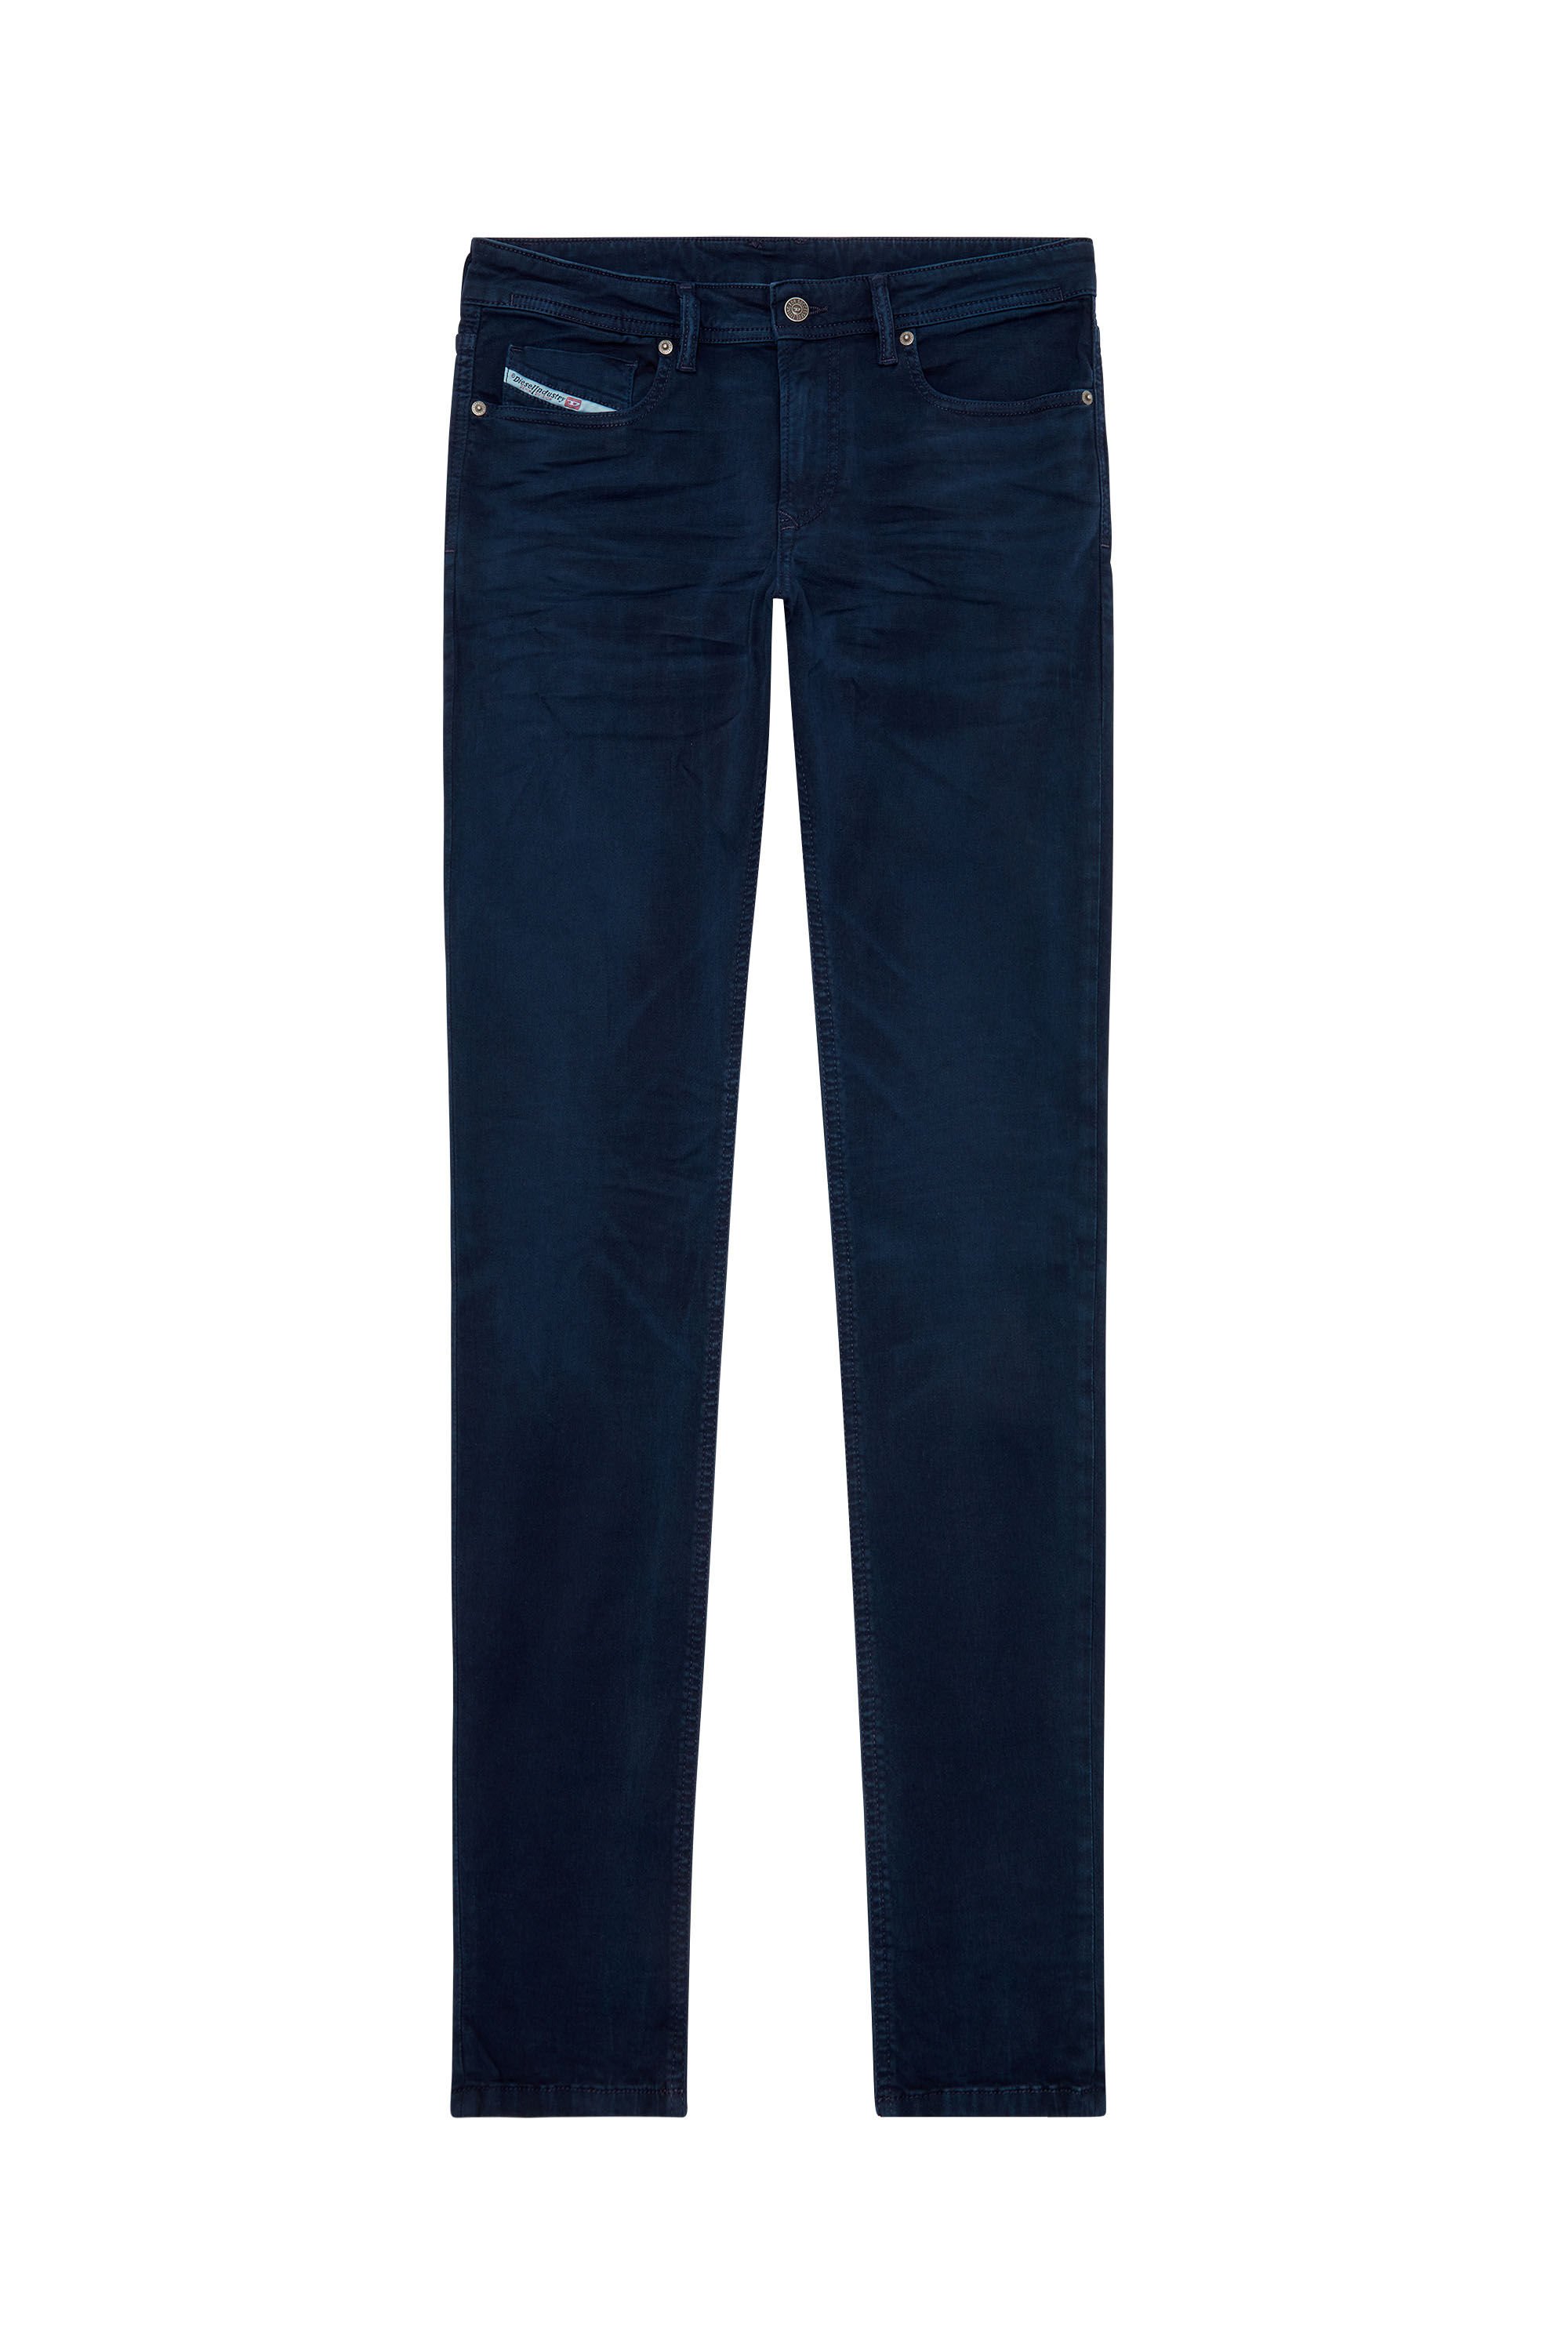 Diesel - Skinny Jeans 1979 Sleenker 0ENAK, Dark Blue - Image 2